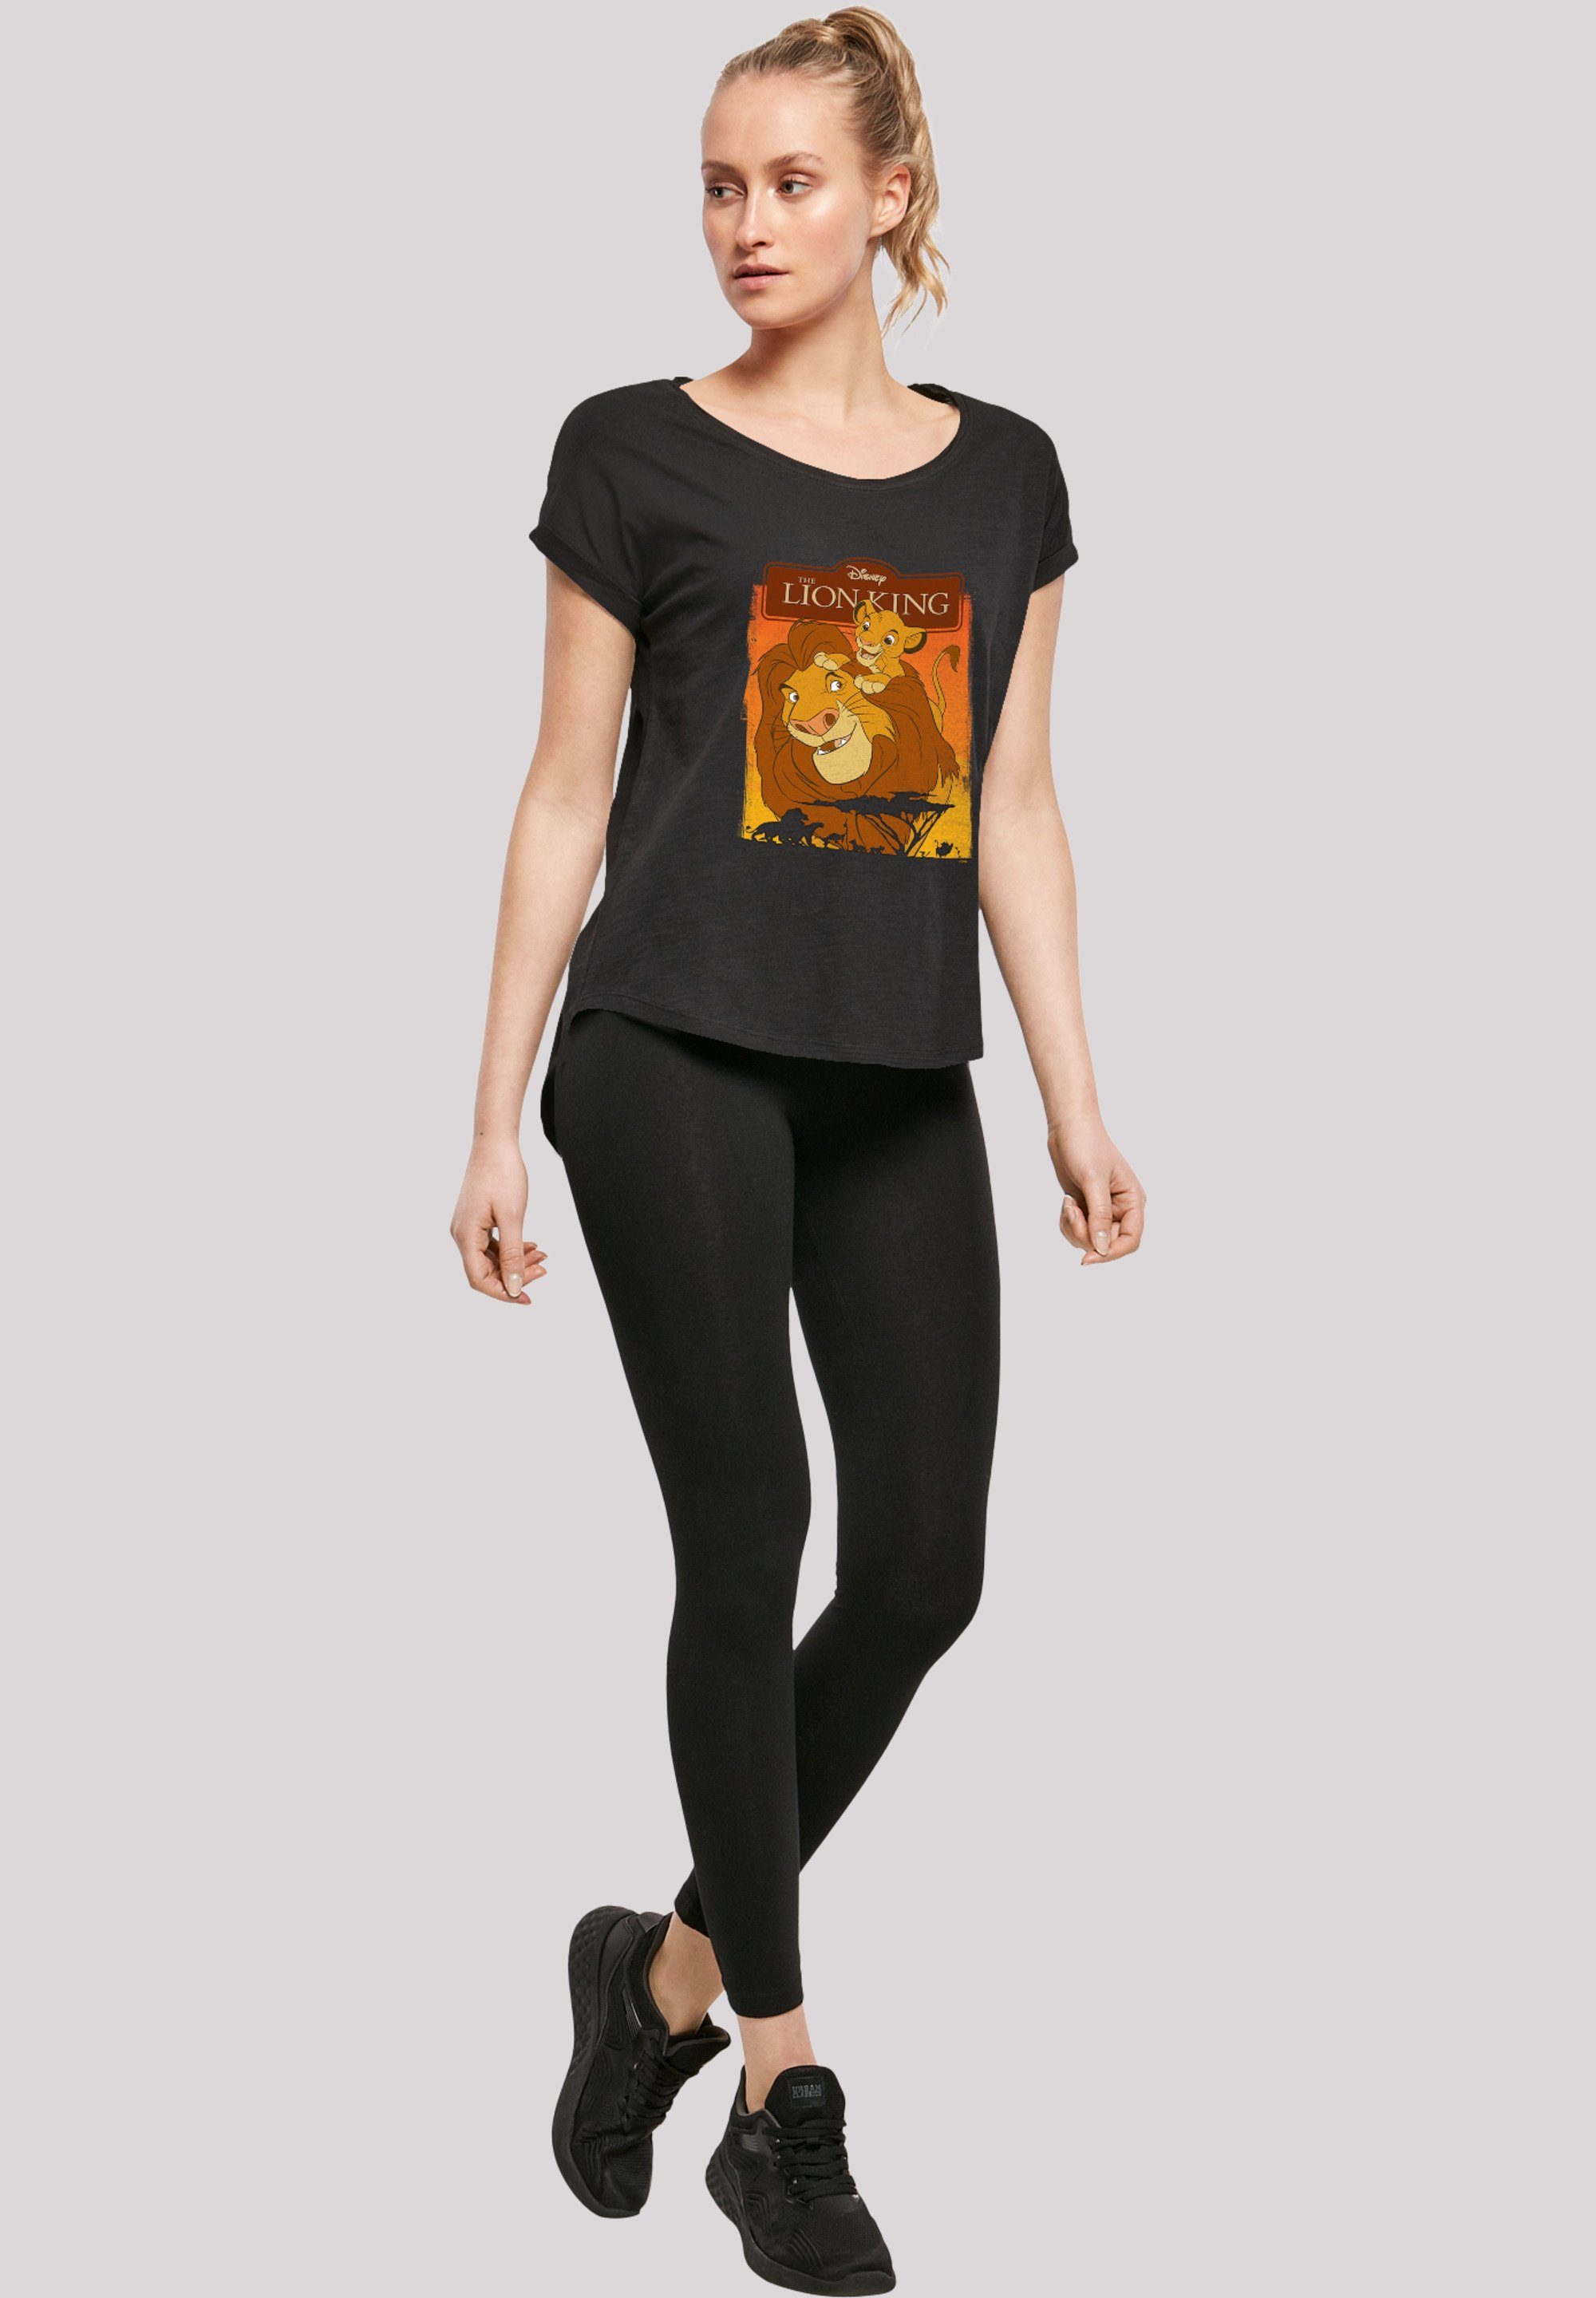 F4NT4STIC T-Shirt ' König Mufasa' Löwen Simba der und Print